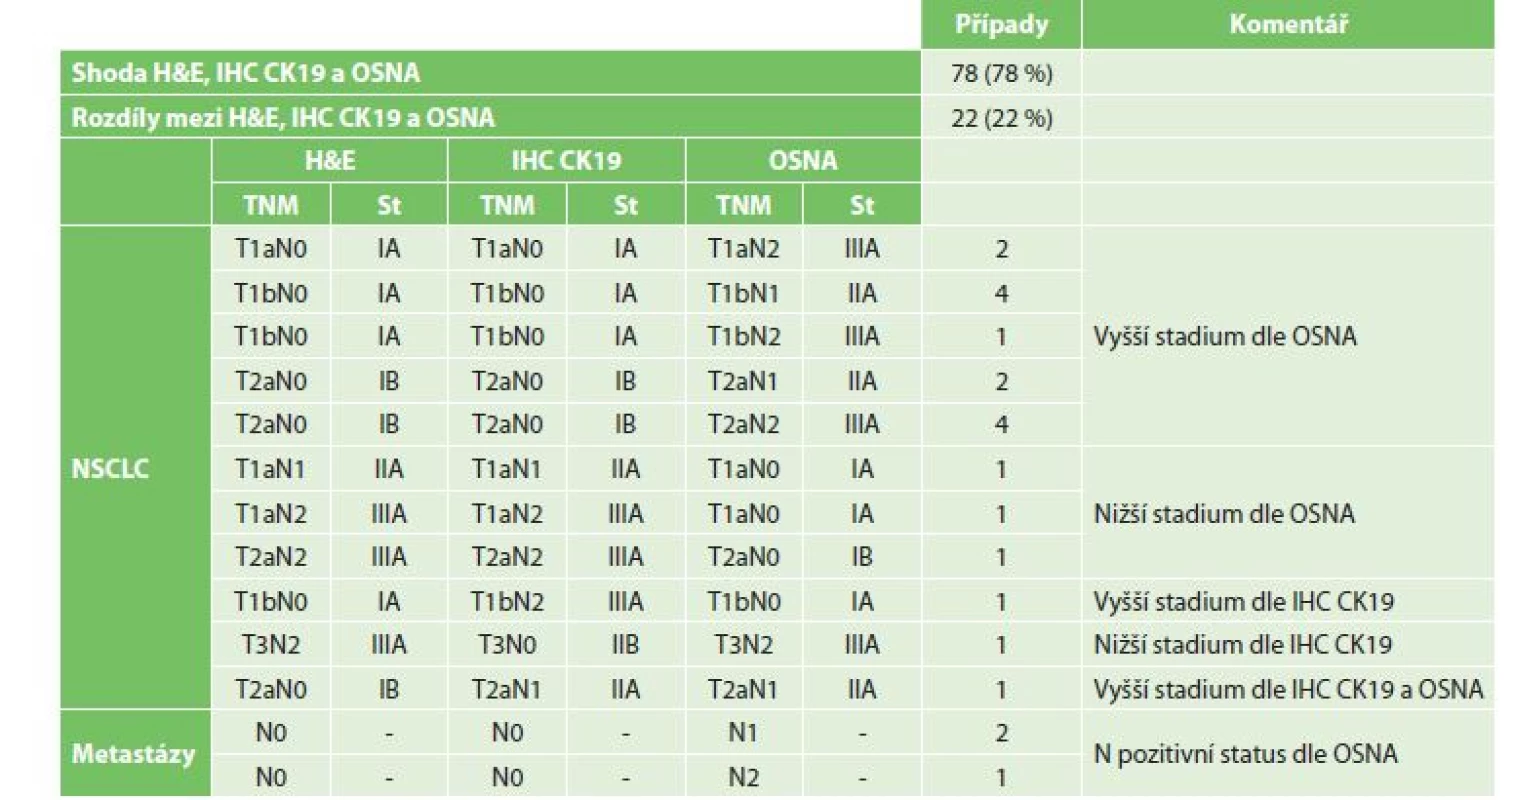 Změny pTNM stagingu v závislosti na výsledcích vyšetření H&E, IHC CK19 a OSNA<br>
Tab. 2: Changes in the pTNM staging depending on H&E, IHC CK19 and OSNA results